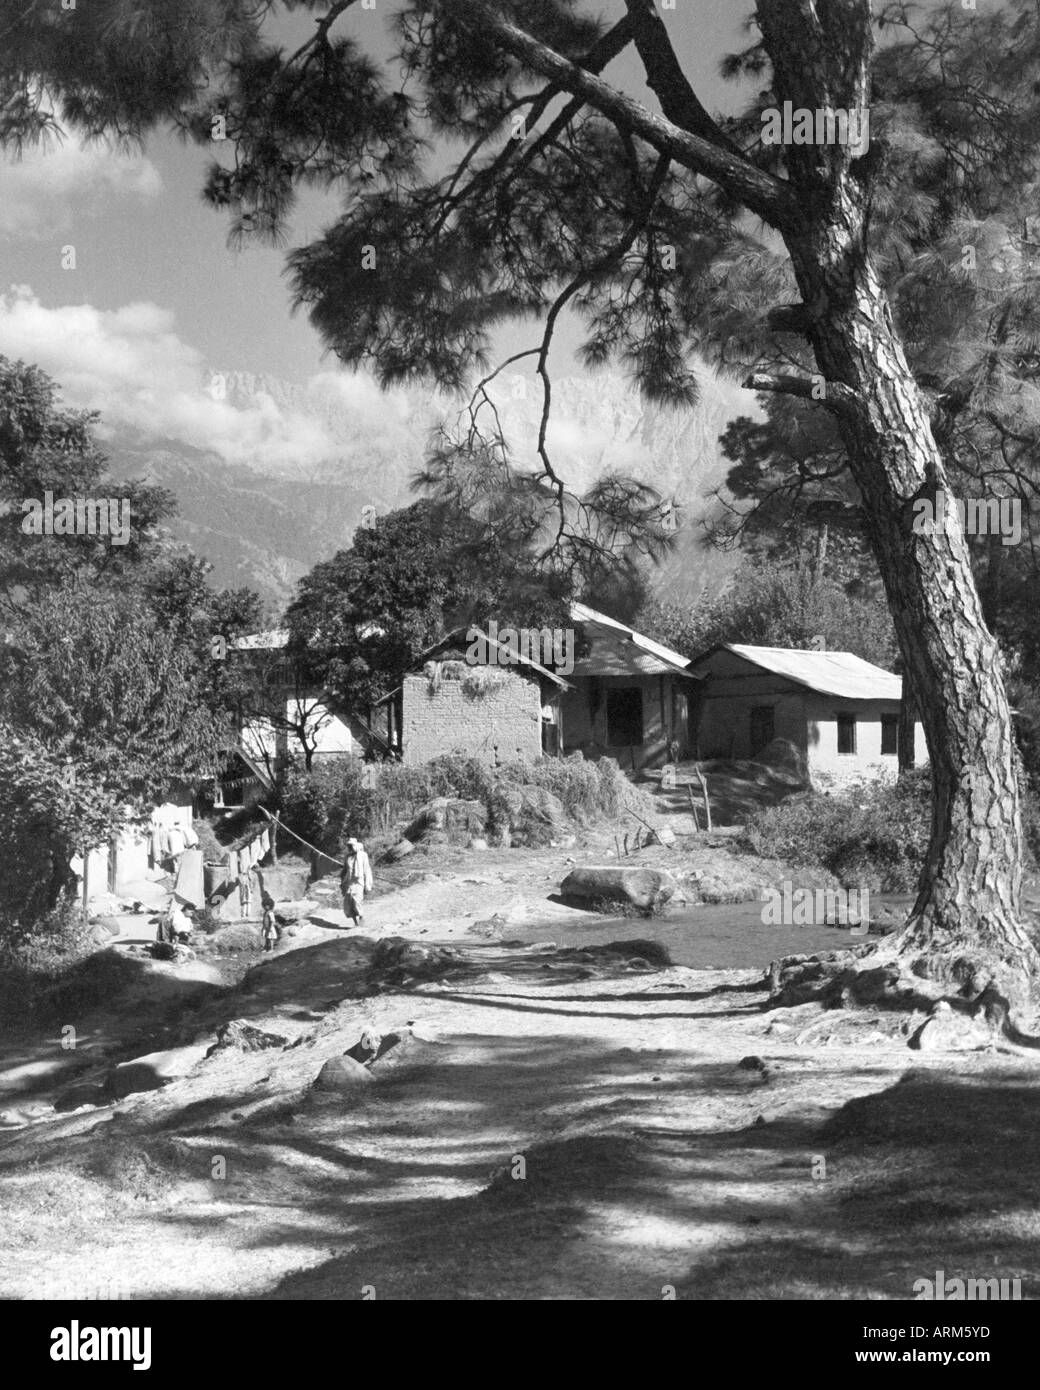 Village Hoshiarpur Doaba Punjab Inde Asie asiatique Indien années 1940 ancienne image vintage 1900 Banque D'Images